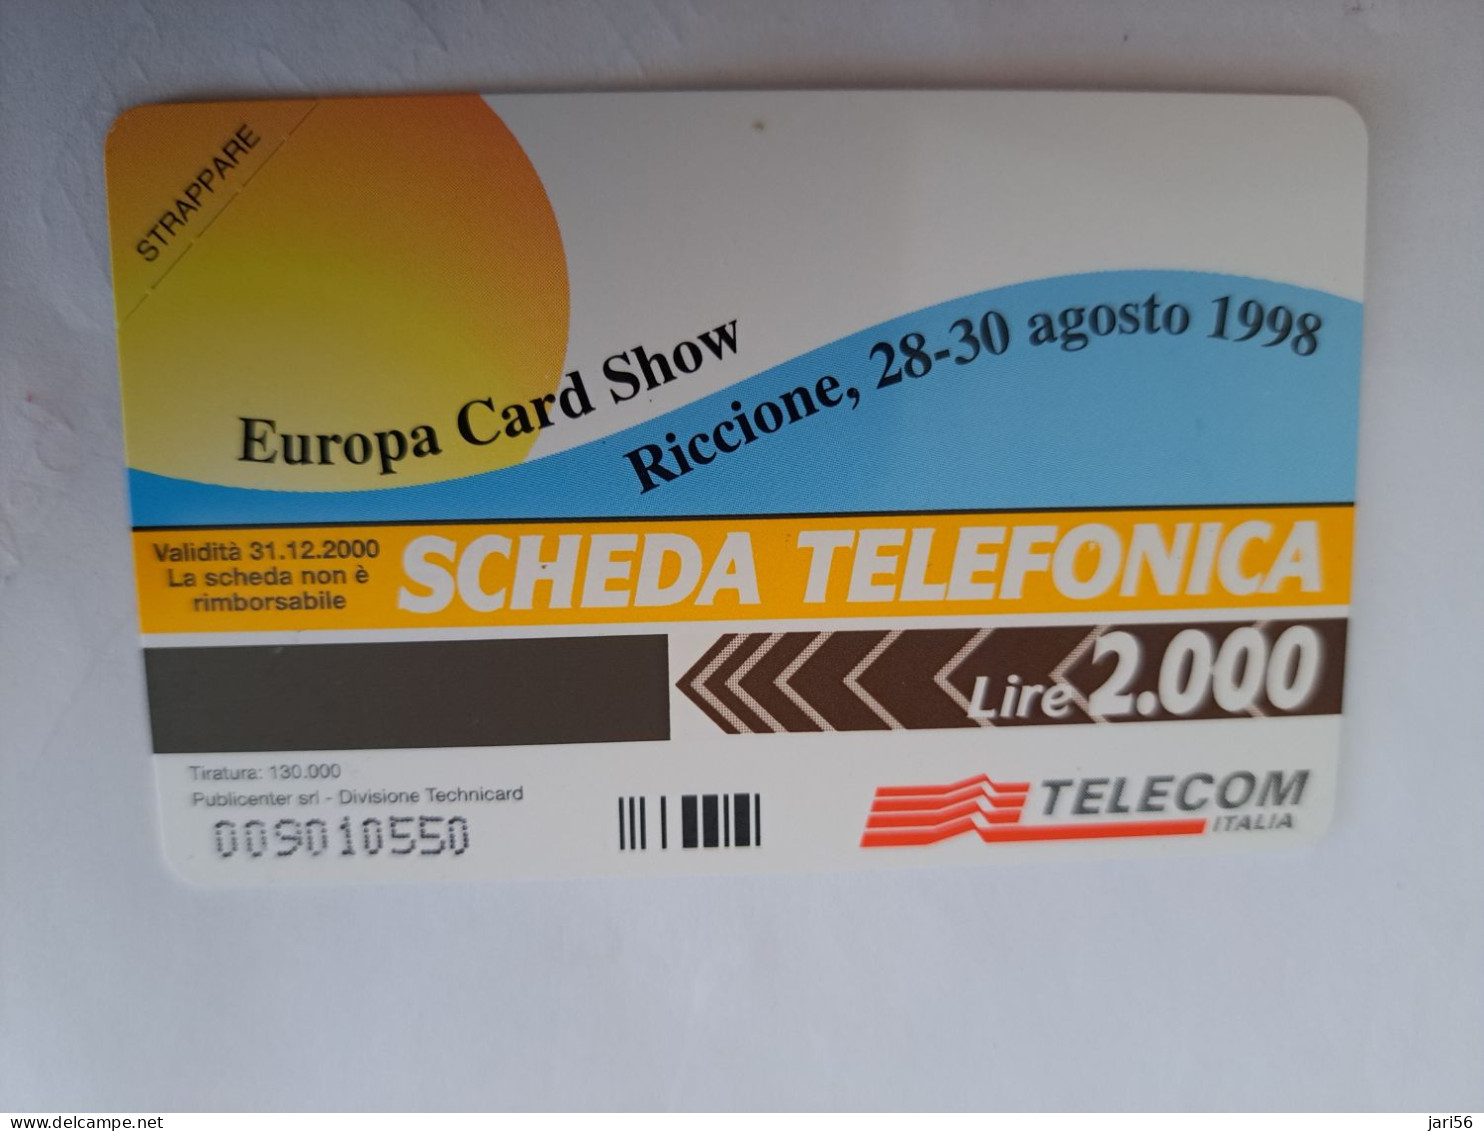 ITALIA LIRE 2000 / EUROPA CARD SHOW/ RICCIONE 1998    / PREPAID  MINT  ** 14240 ** - Pubbliche Ordinarie